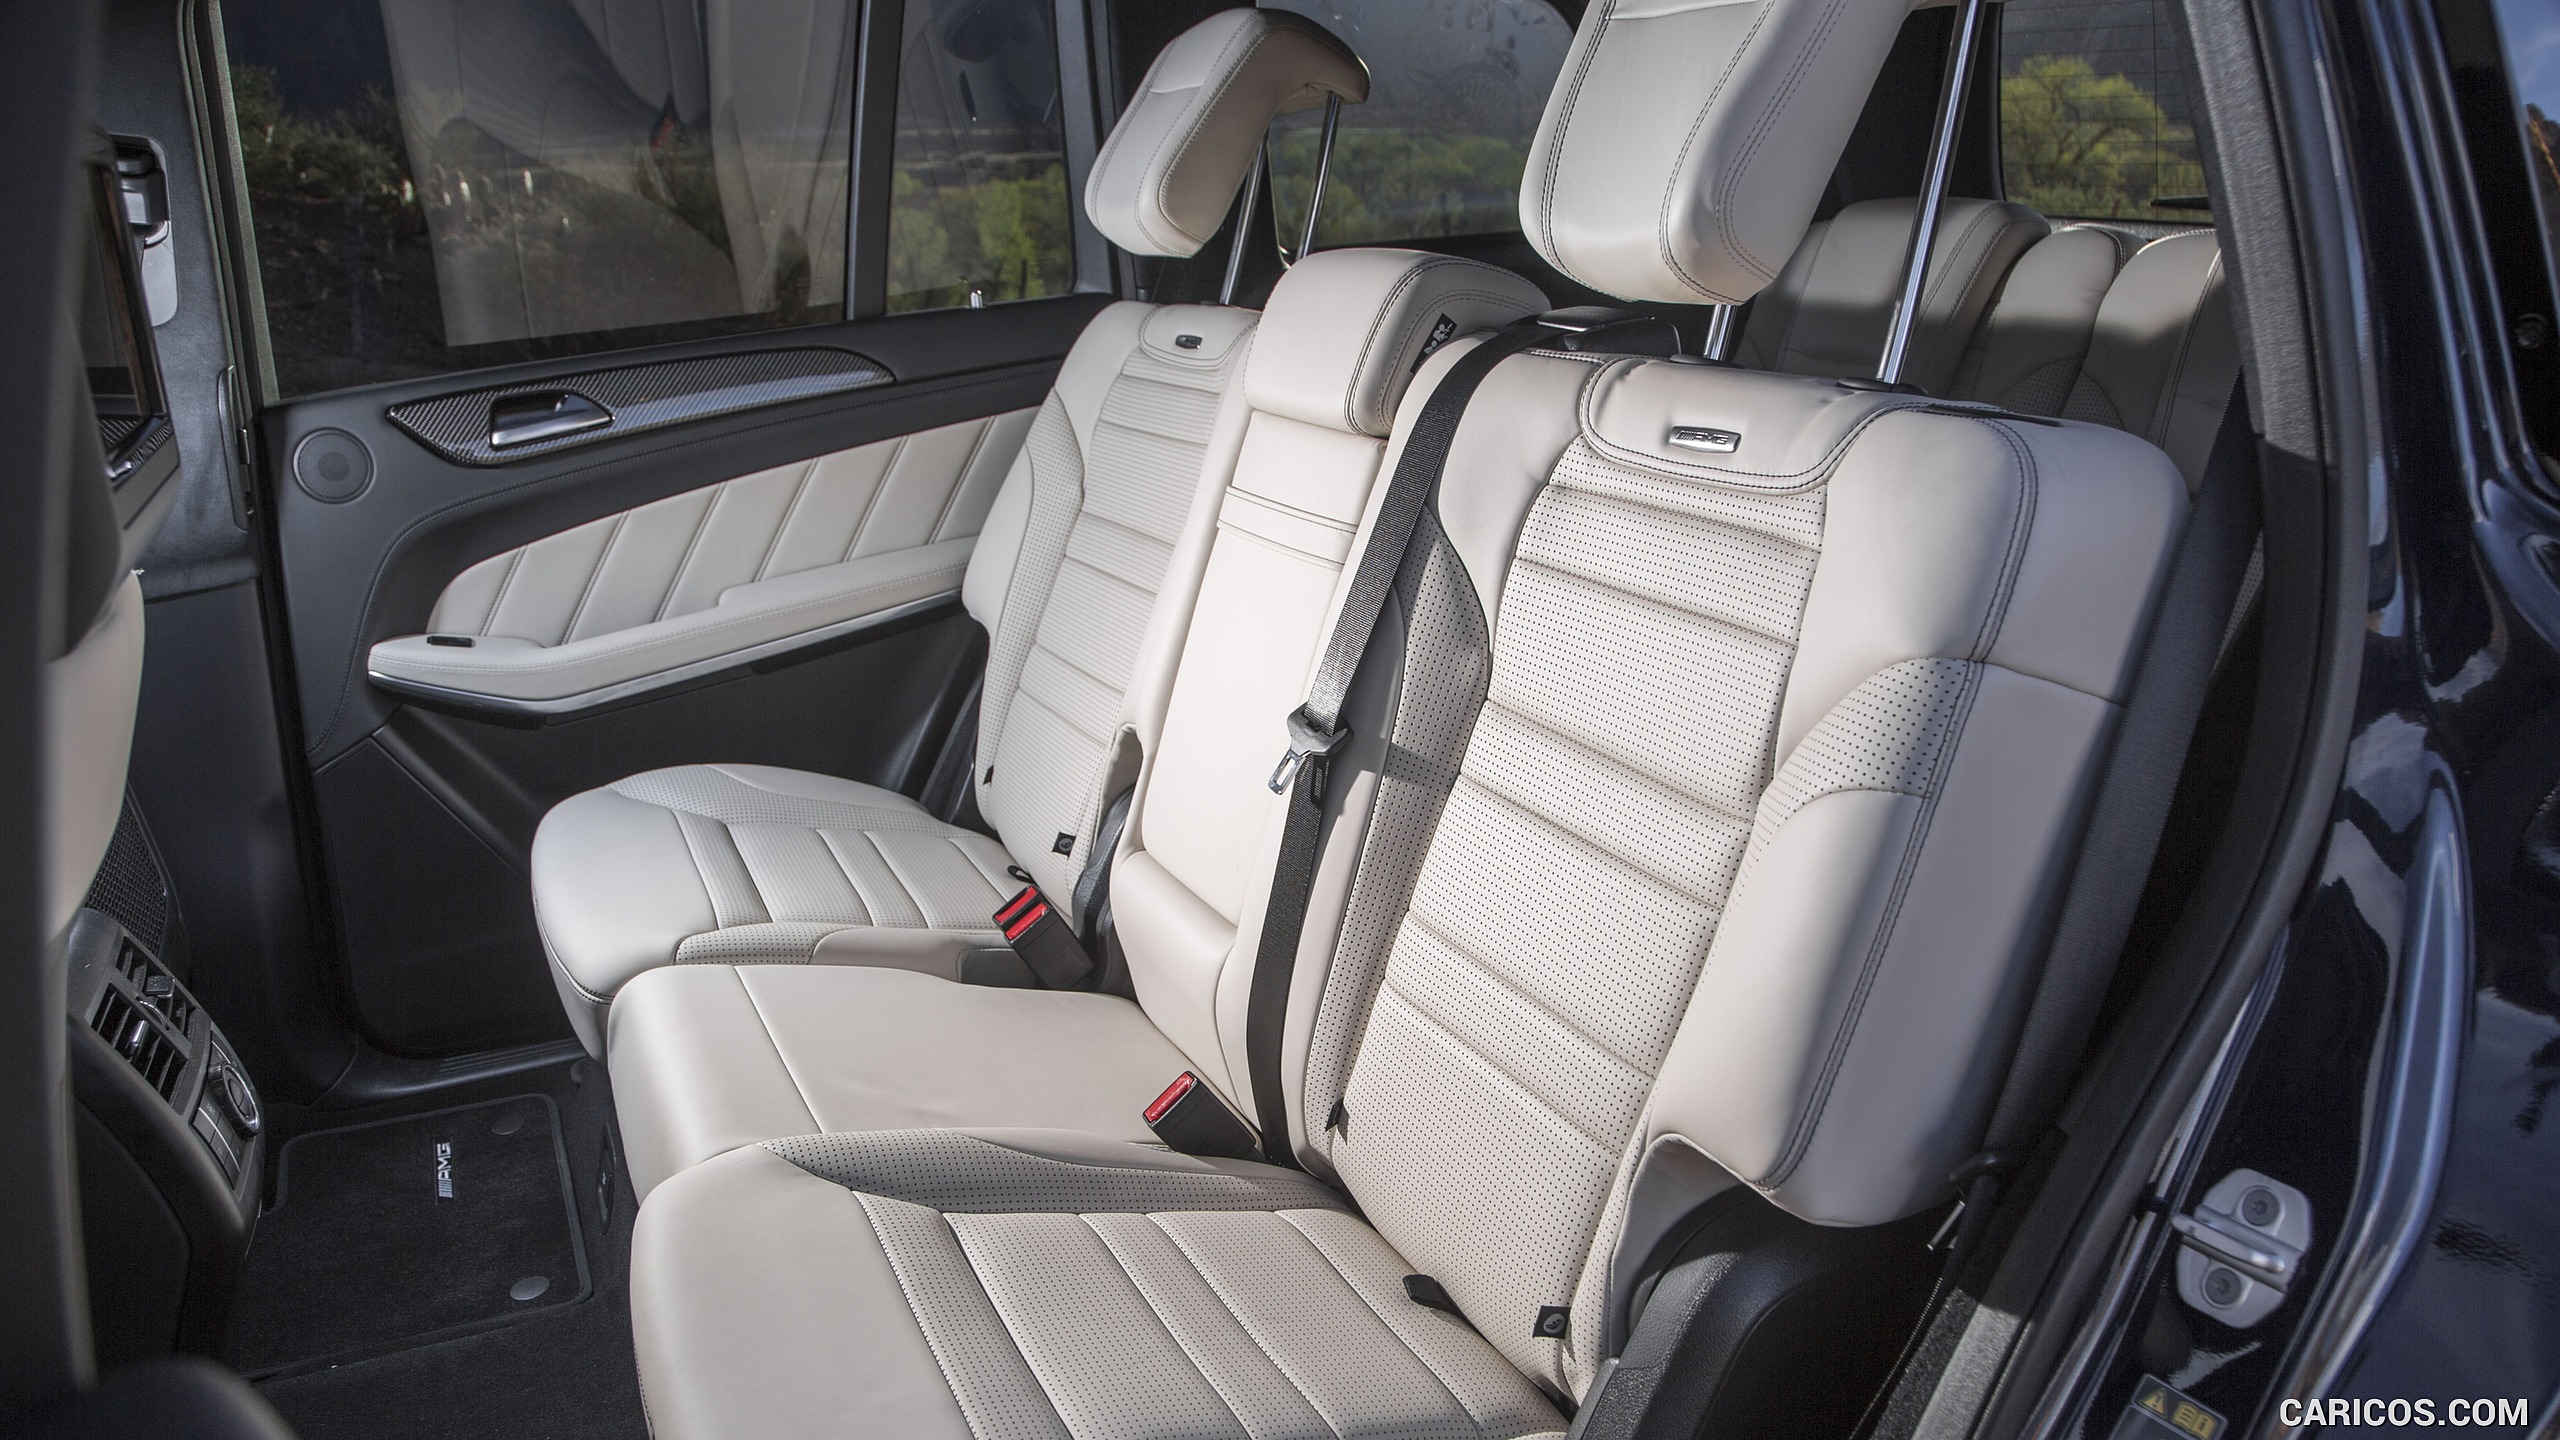 2017 Mercedes-AMG GLS 63 (US-Spec) - Interior, Rear Seats, #57 of 57